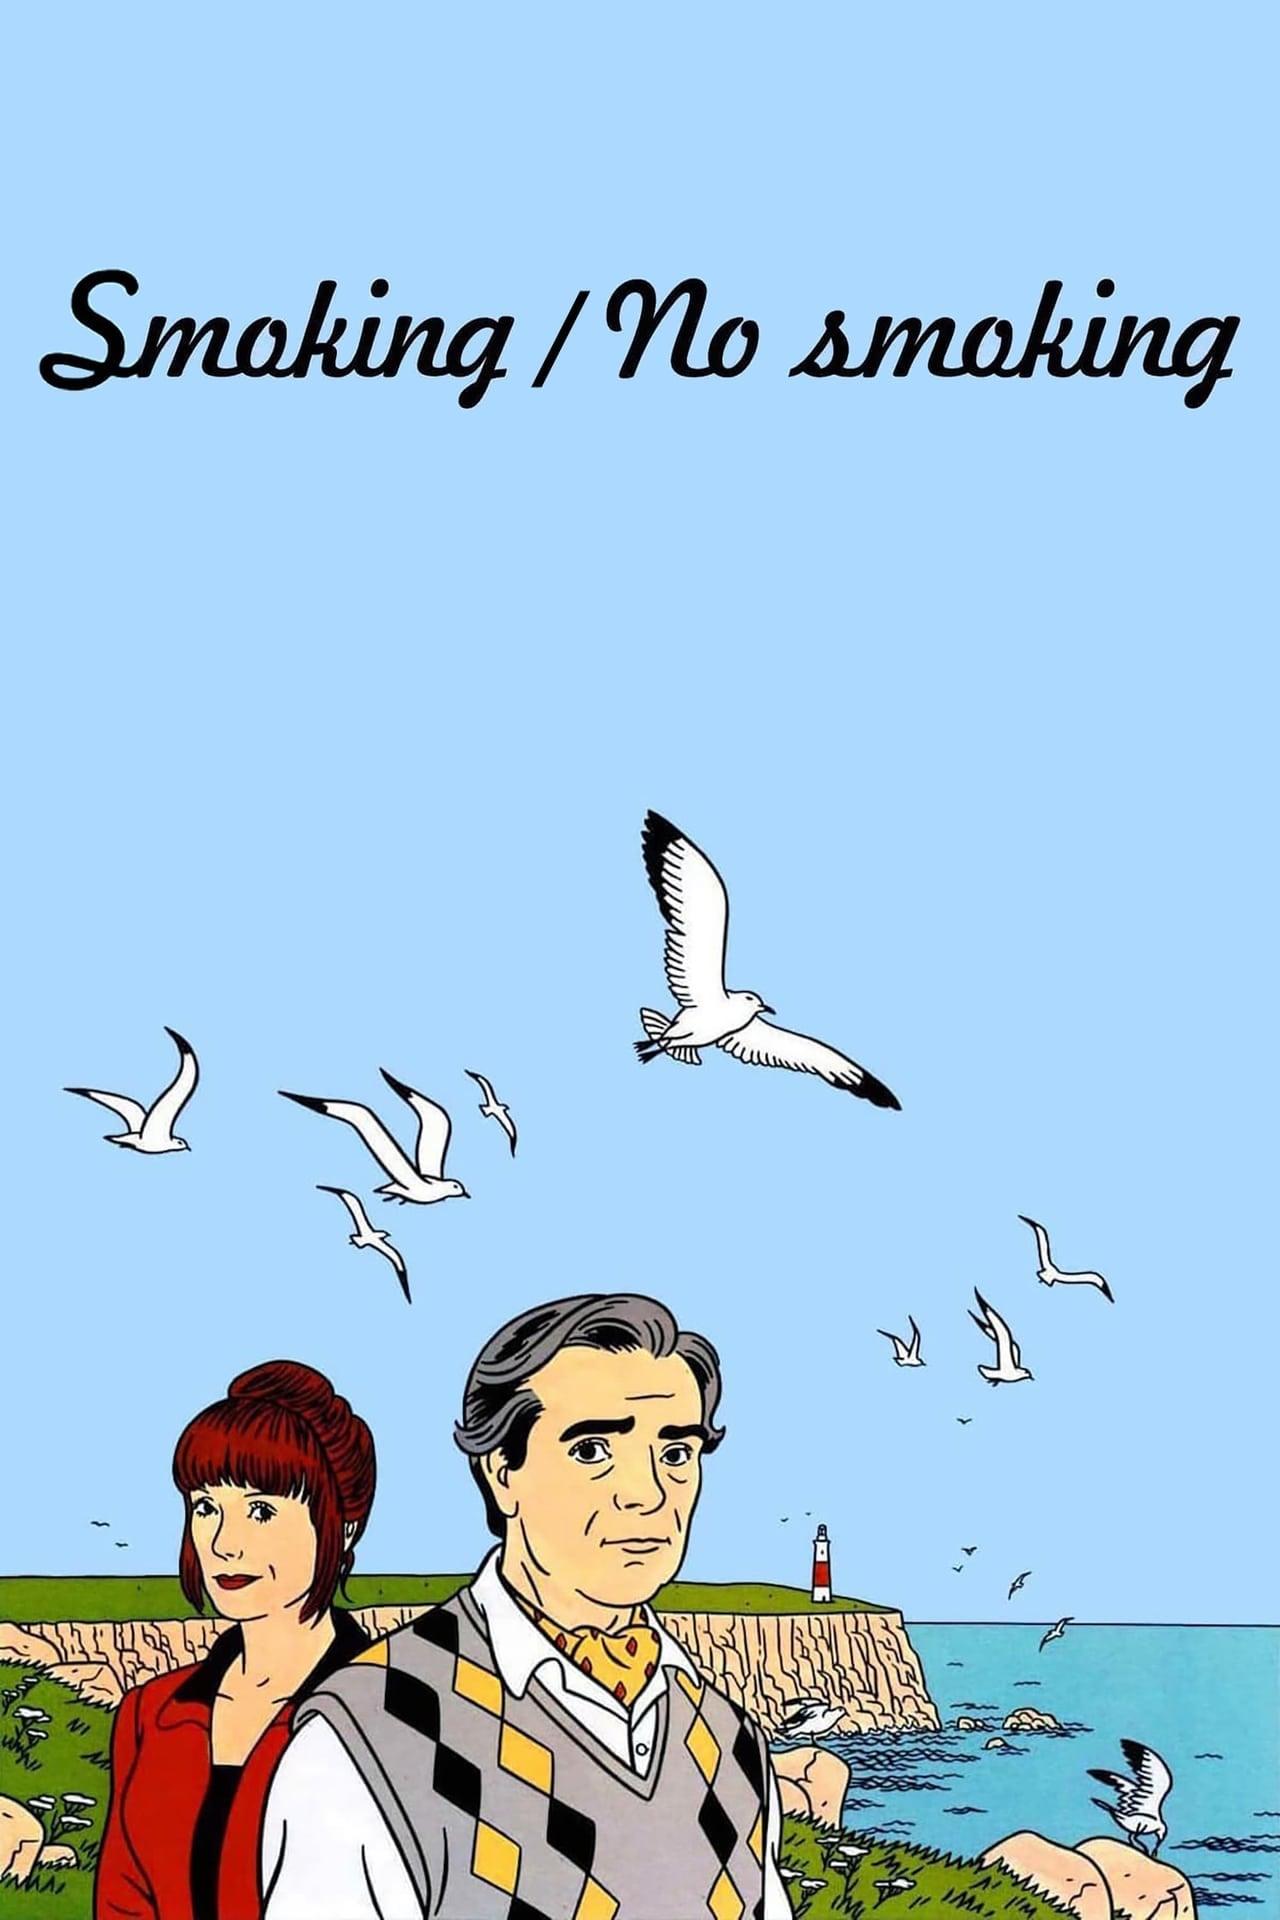 Smoking poster